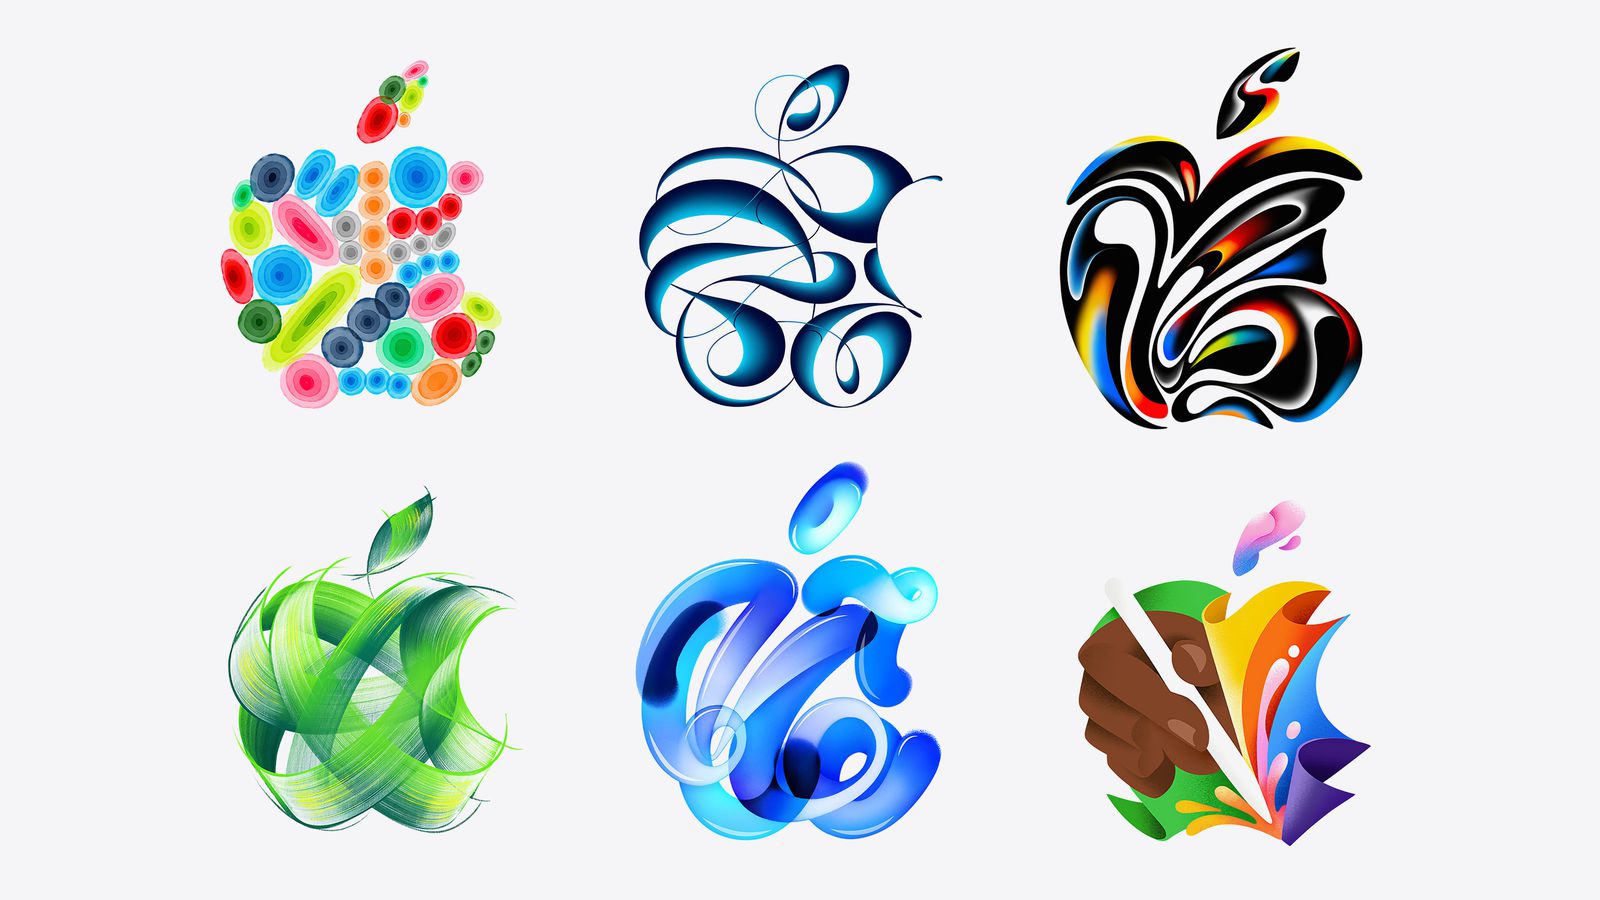 از iPhoneIslam.com، شش طرح انتزاعی در رنگ‌های روشن و شکل‌های روان، از جمله مجموعه‌ای از کره‌ها، شکل‌های روبان مانند و نقوش برگ تحت تأثیر اخبار حاشیه‌ای.